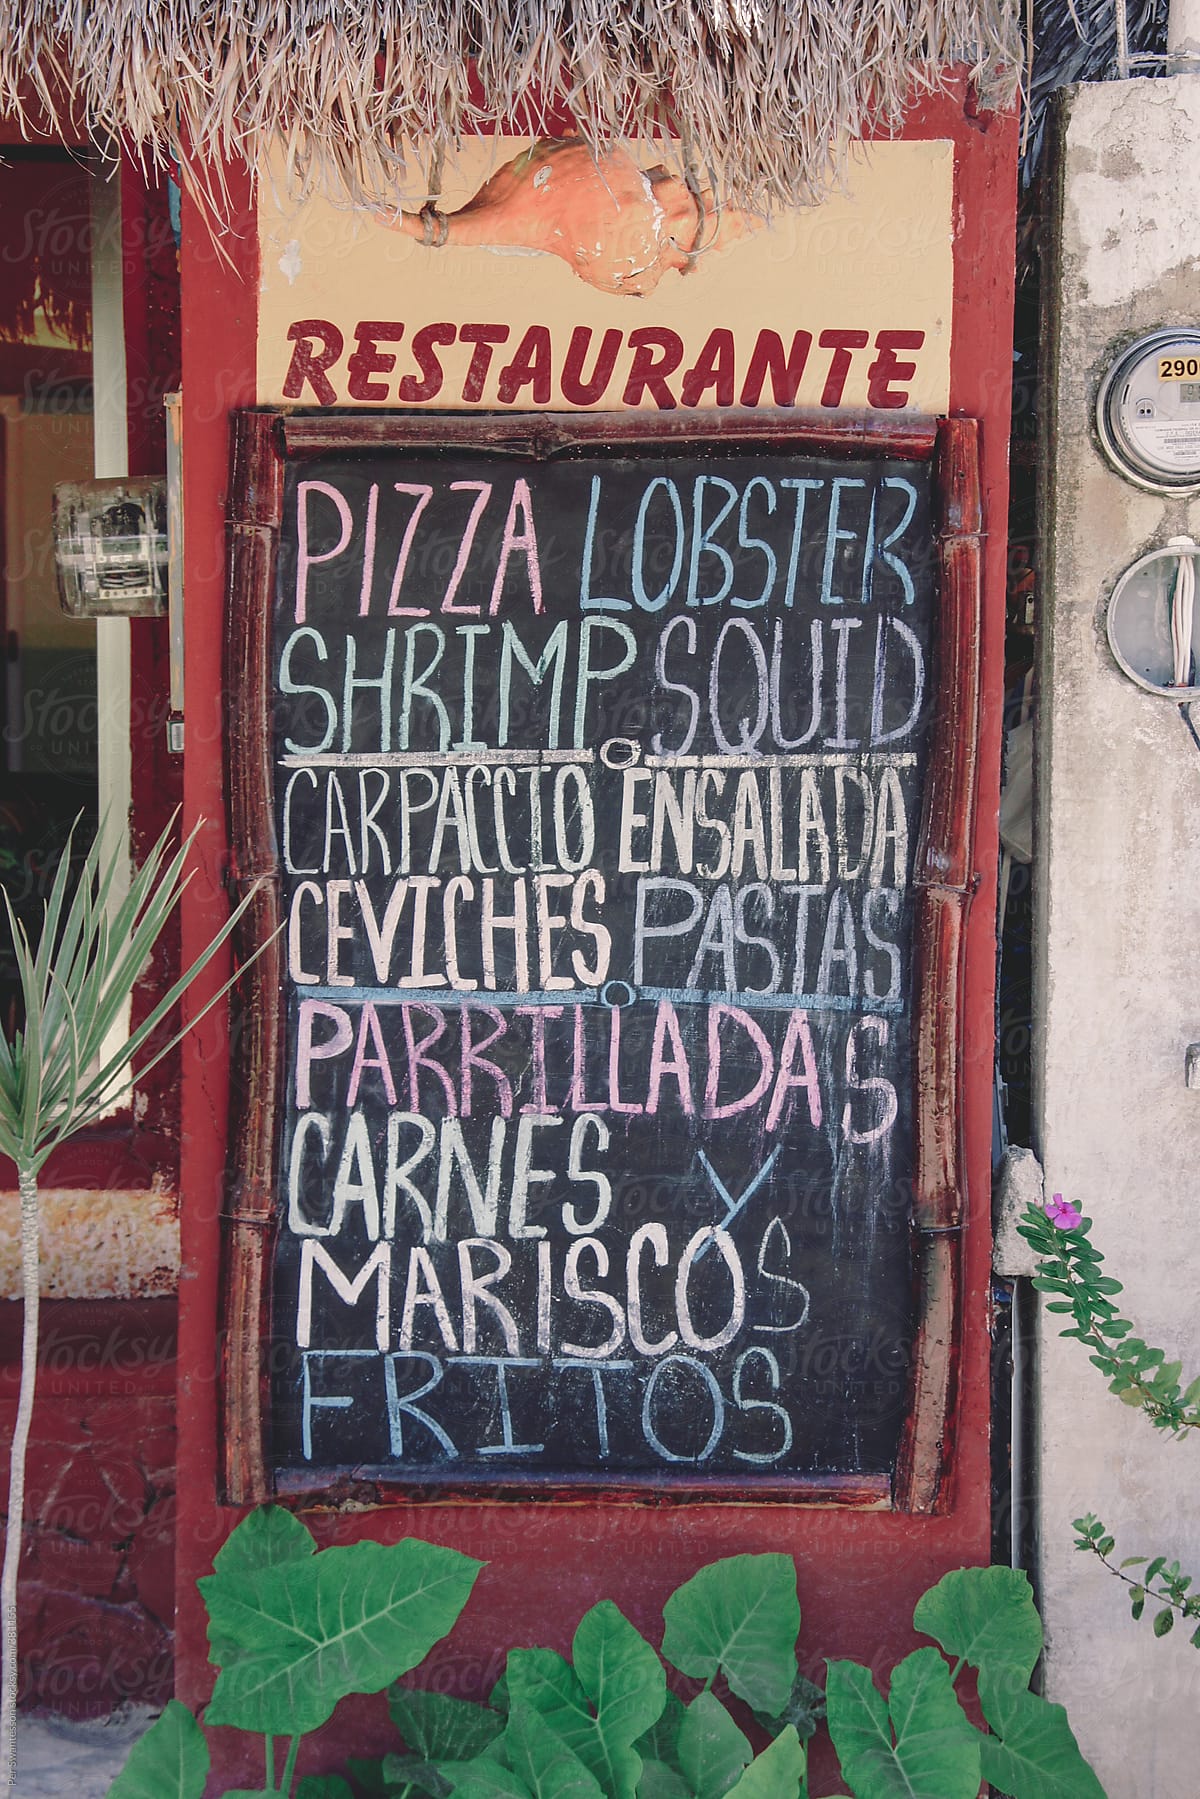 Road side handwritten menu board outside Mexican restaurant